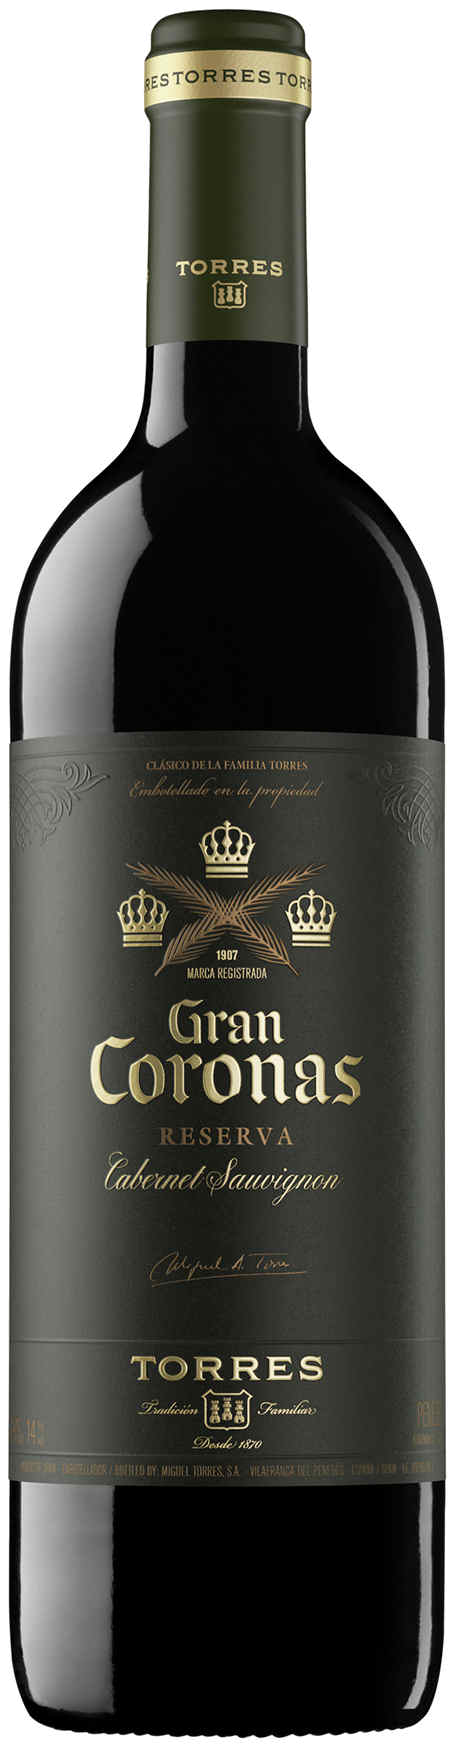 Gran Coronas Cabernet Sauvignon